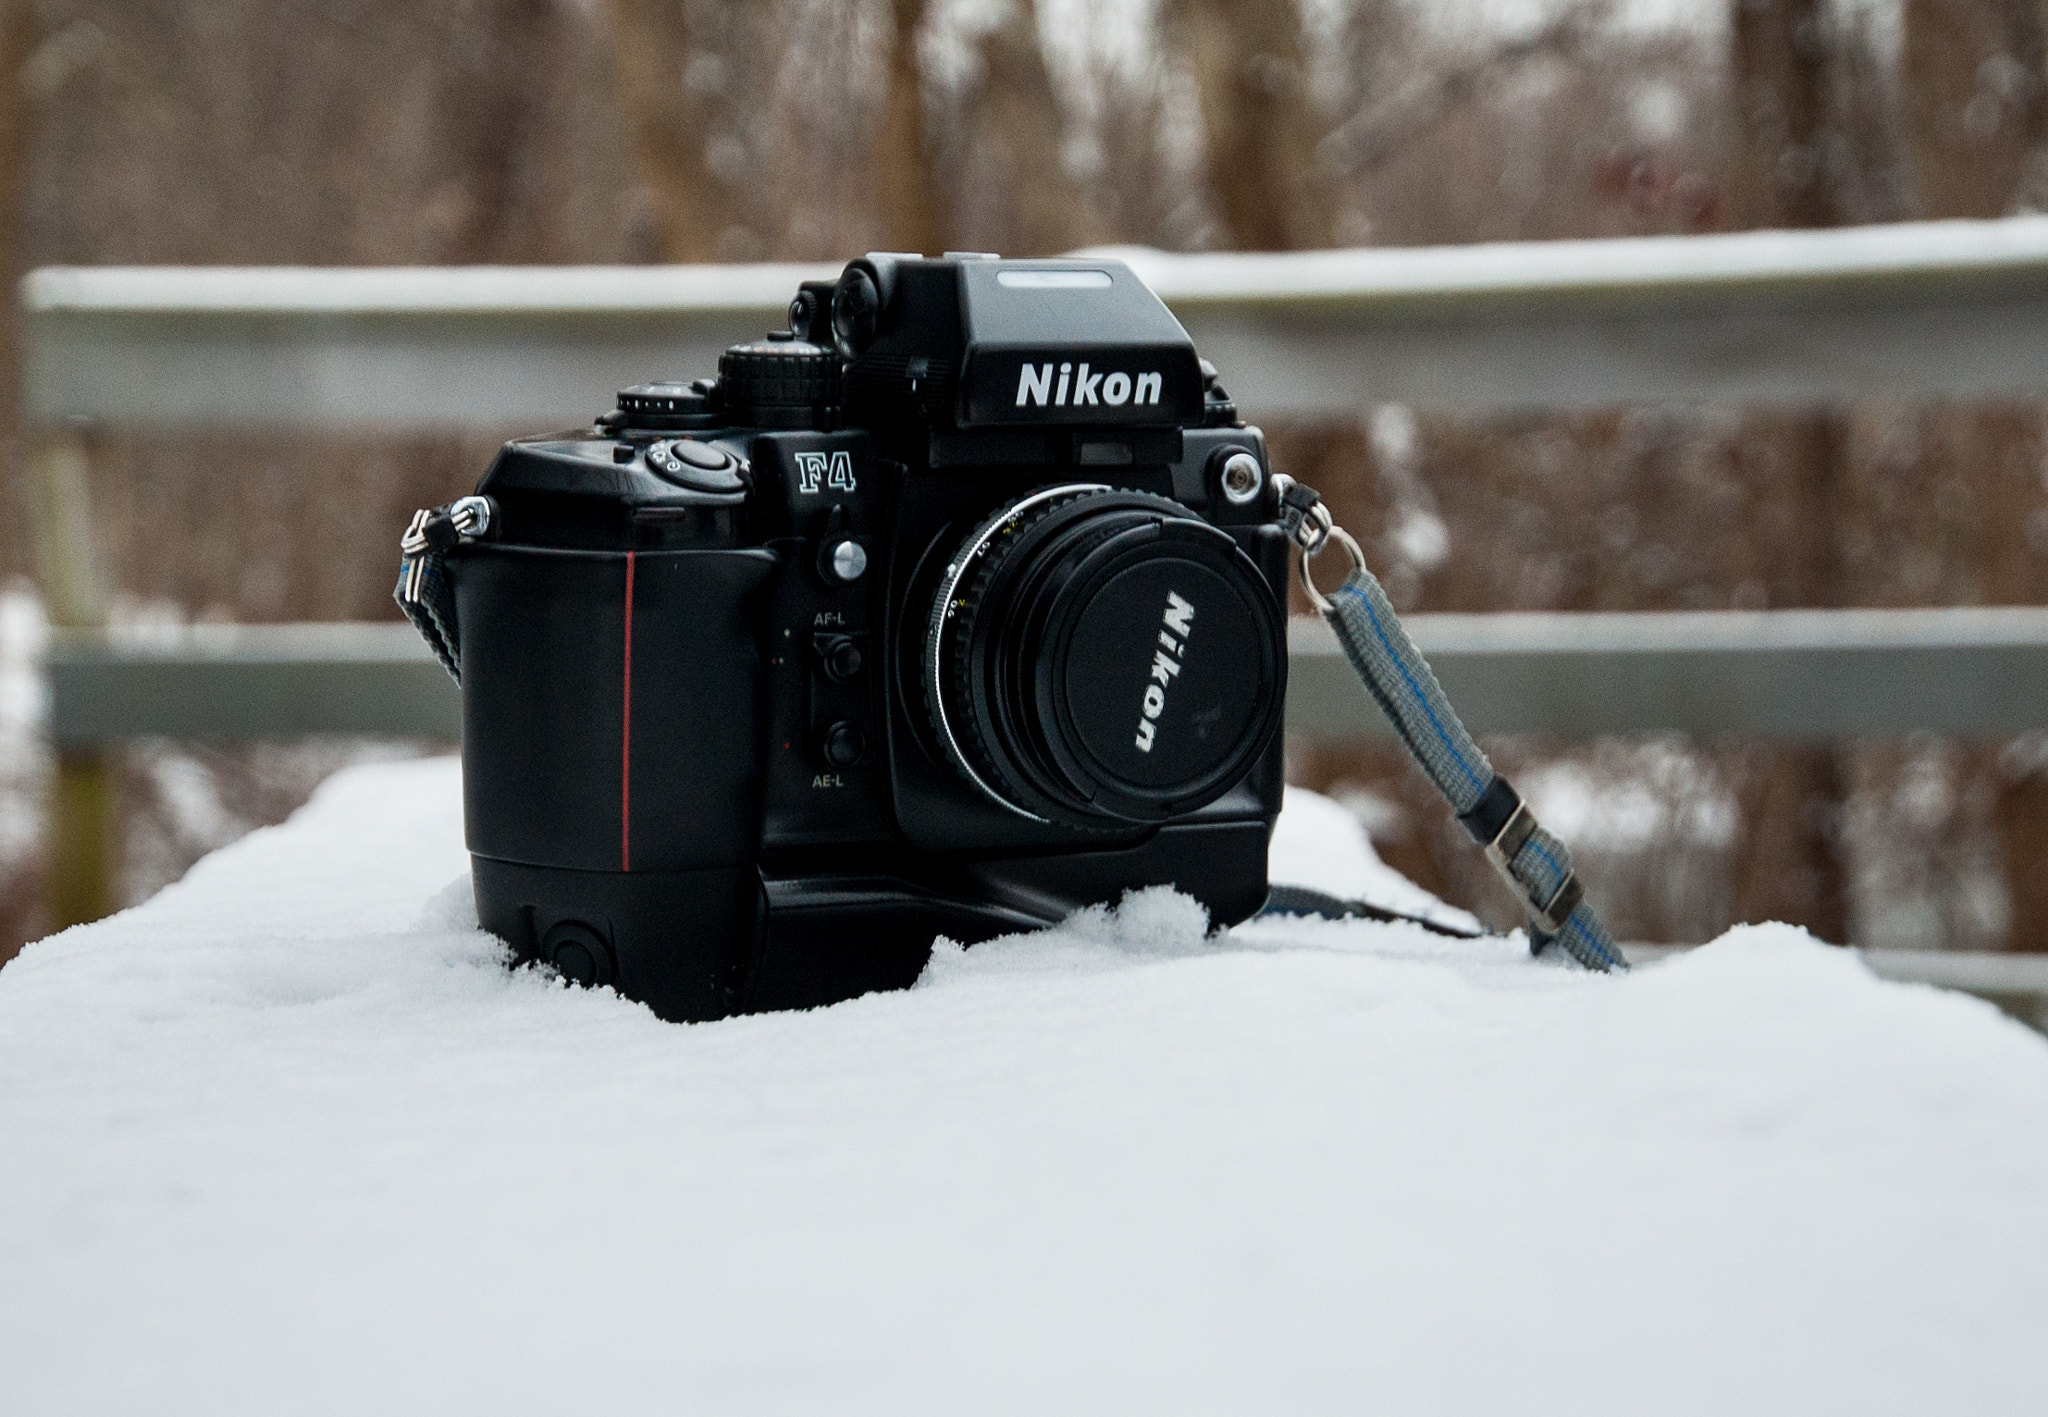 Nikon D40 + Nikon AF-S DX Nikkor 16-85mm F3.5-5.6G ED VR sample photo. Nikon f4 photography